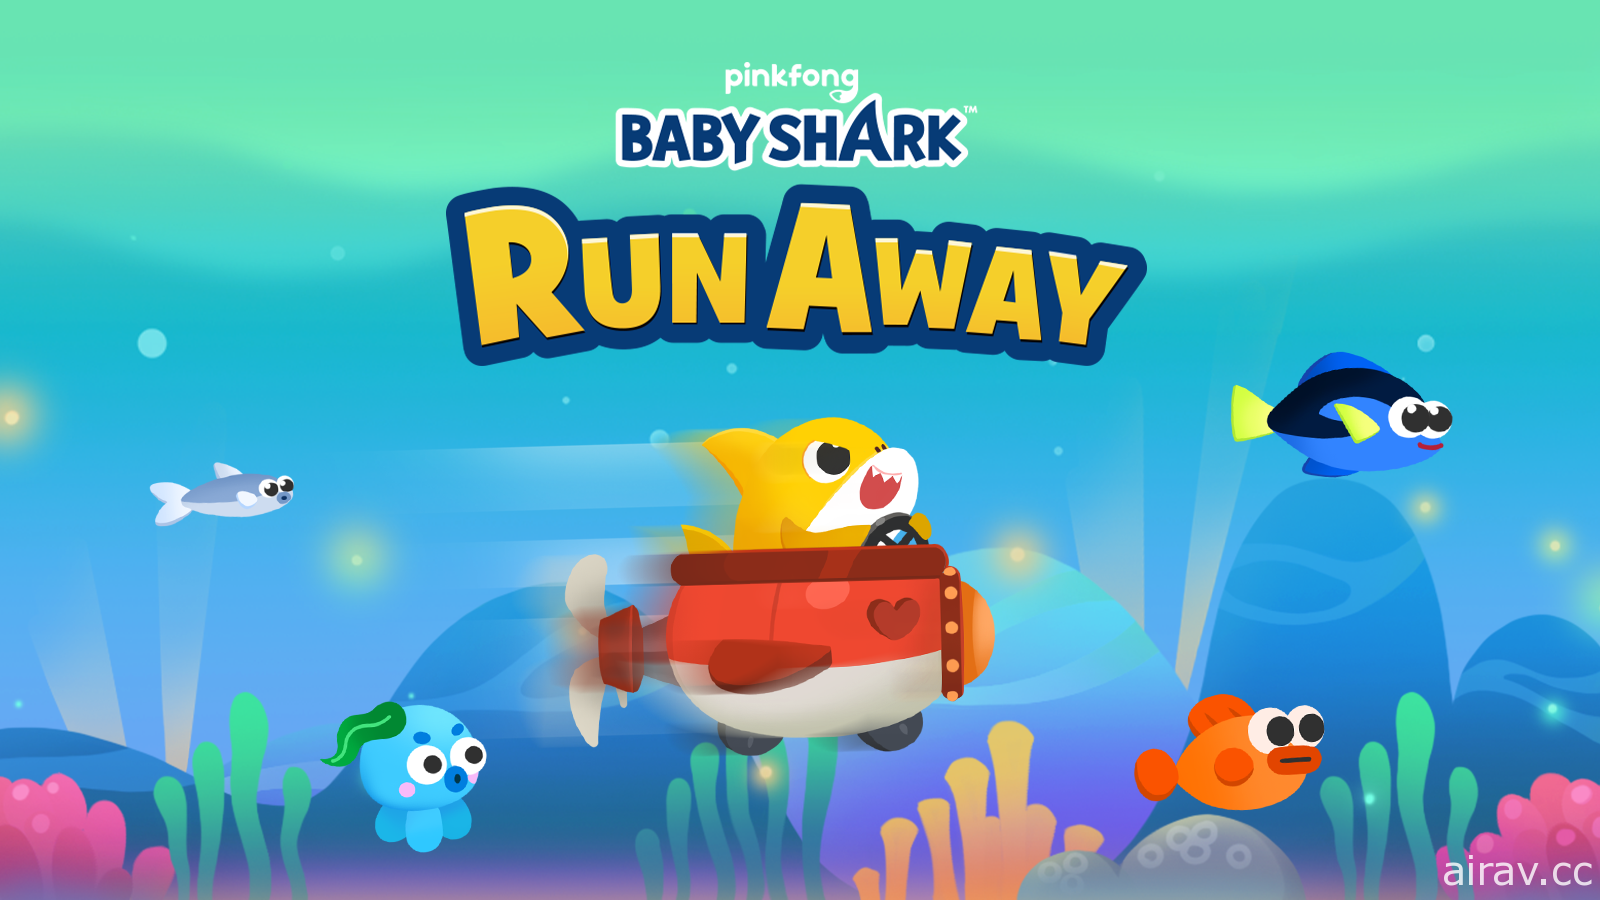 人氣兒歌「Baby Shark」IP 改編遊戲《鯊魚寶寶逃亡》上市 帶領鯊魚寶寶拯救朋友家人